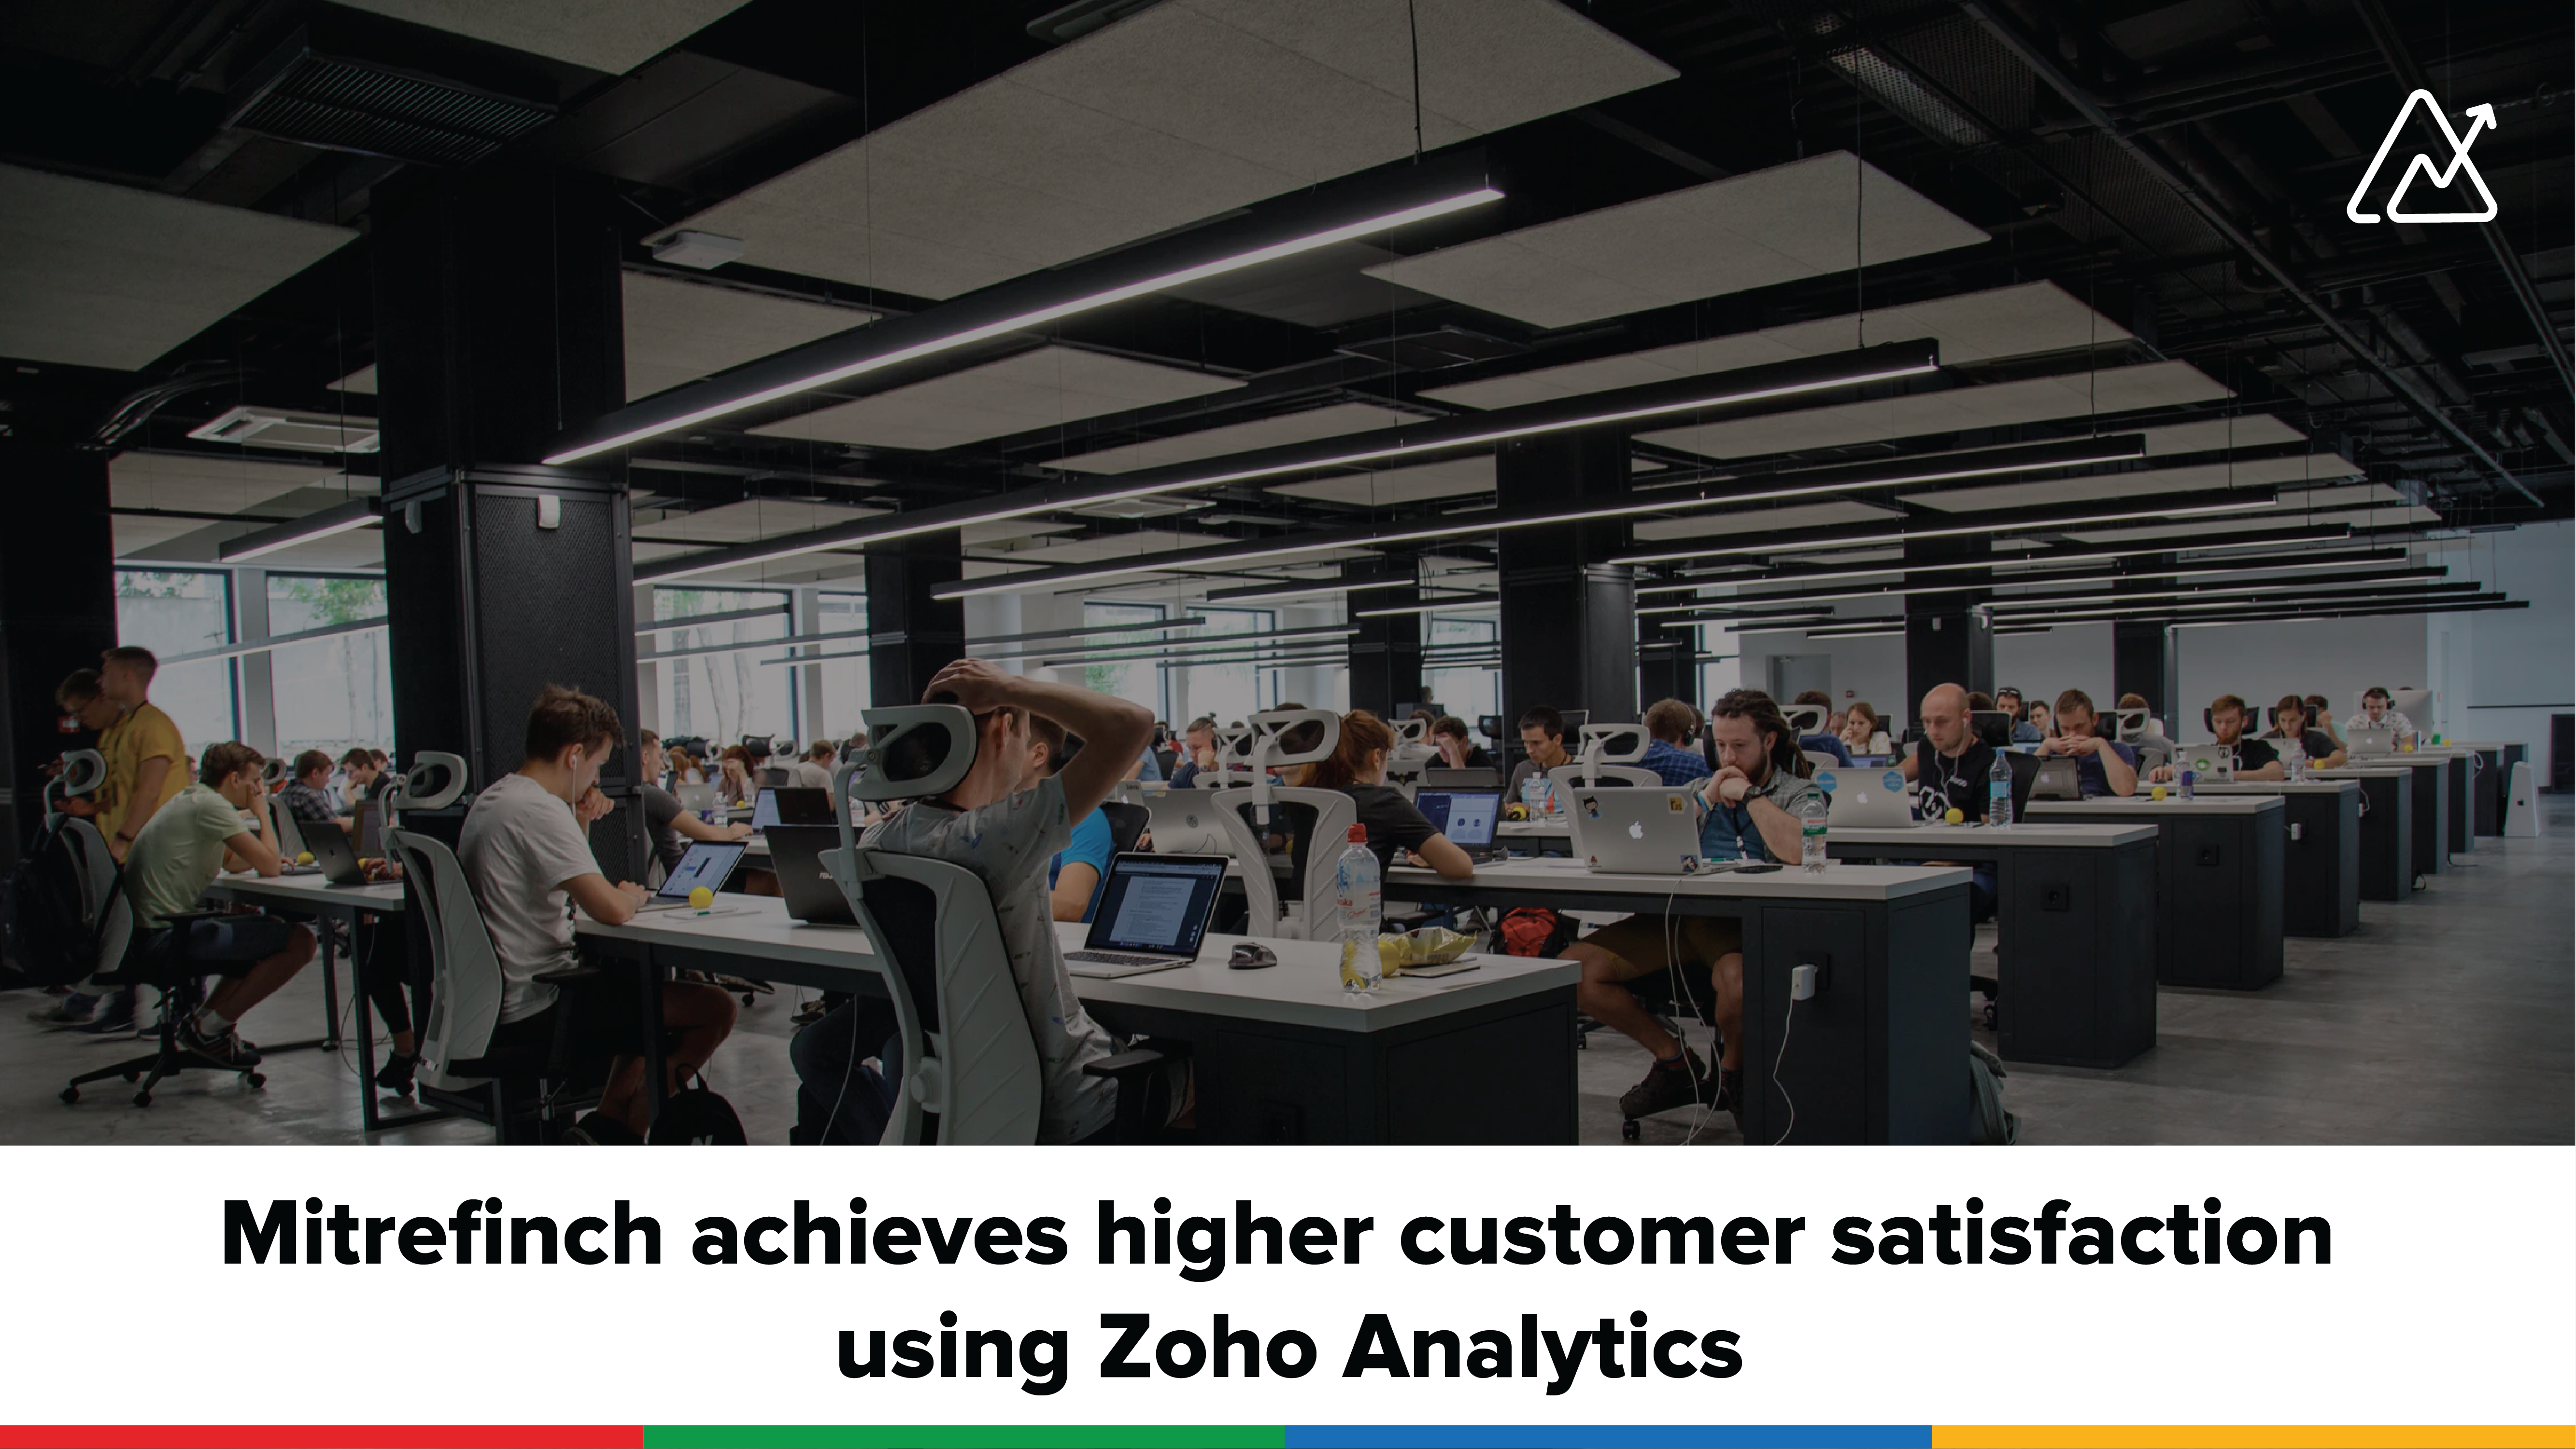 Customer spotlight—Mitrefinch achieves higher customer satisfaction using Zoho Analytics